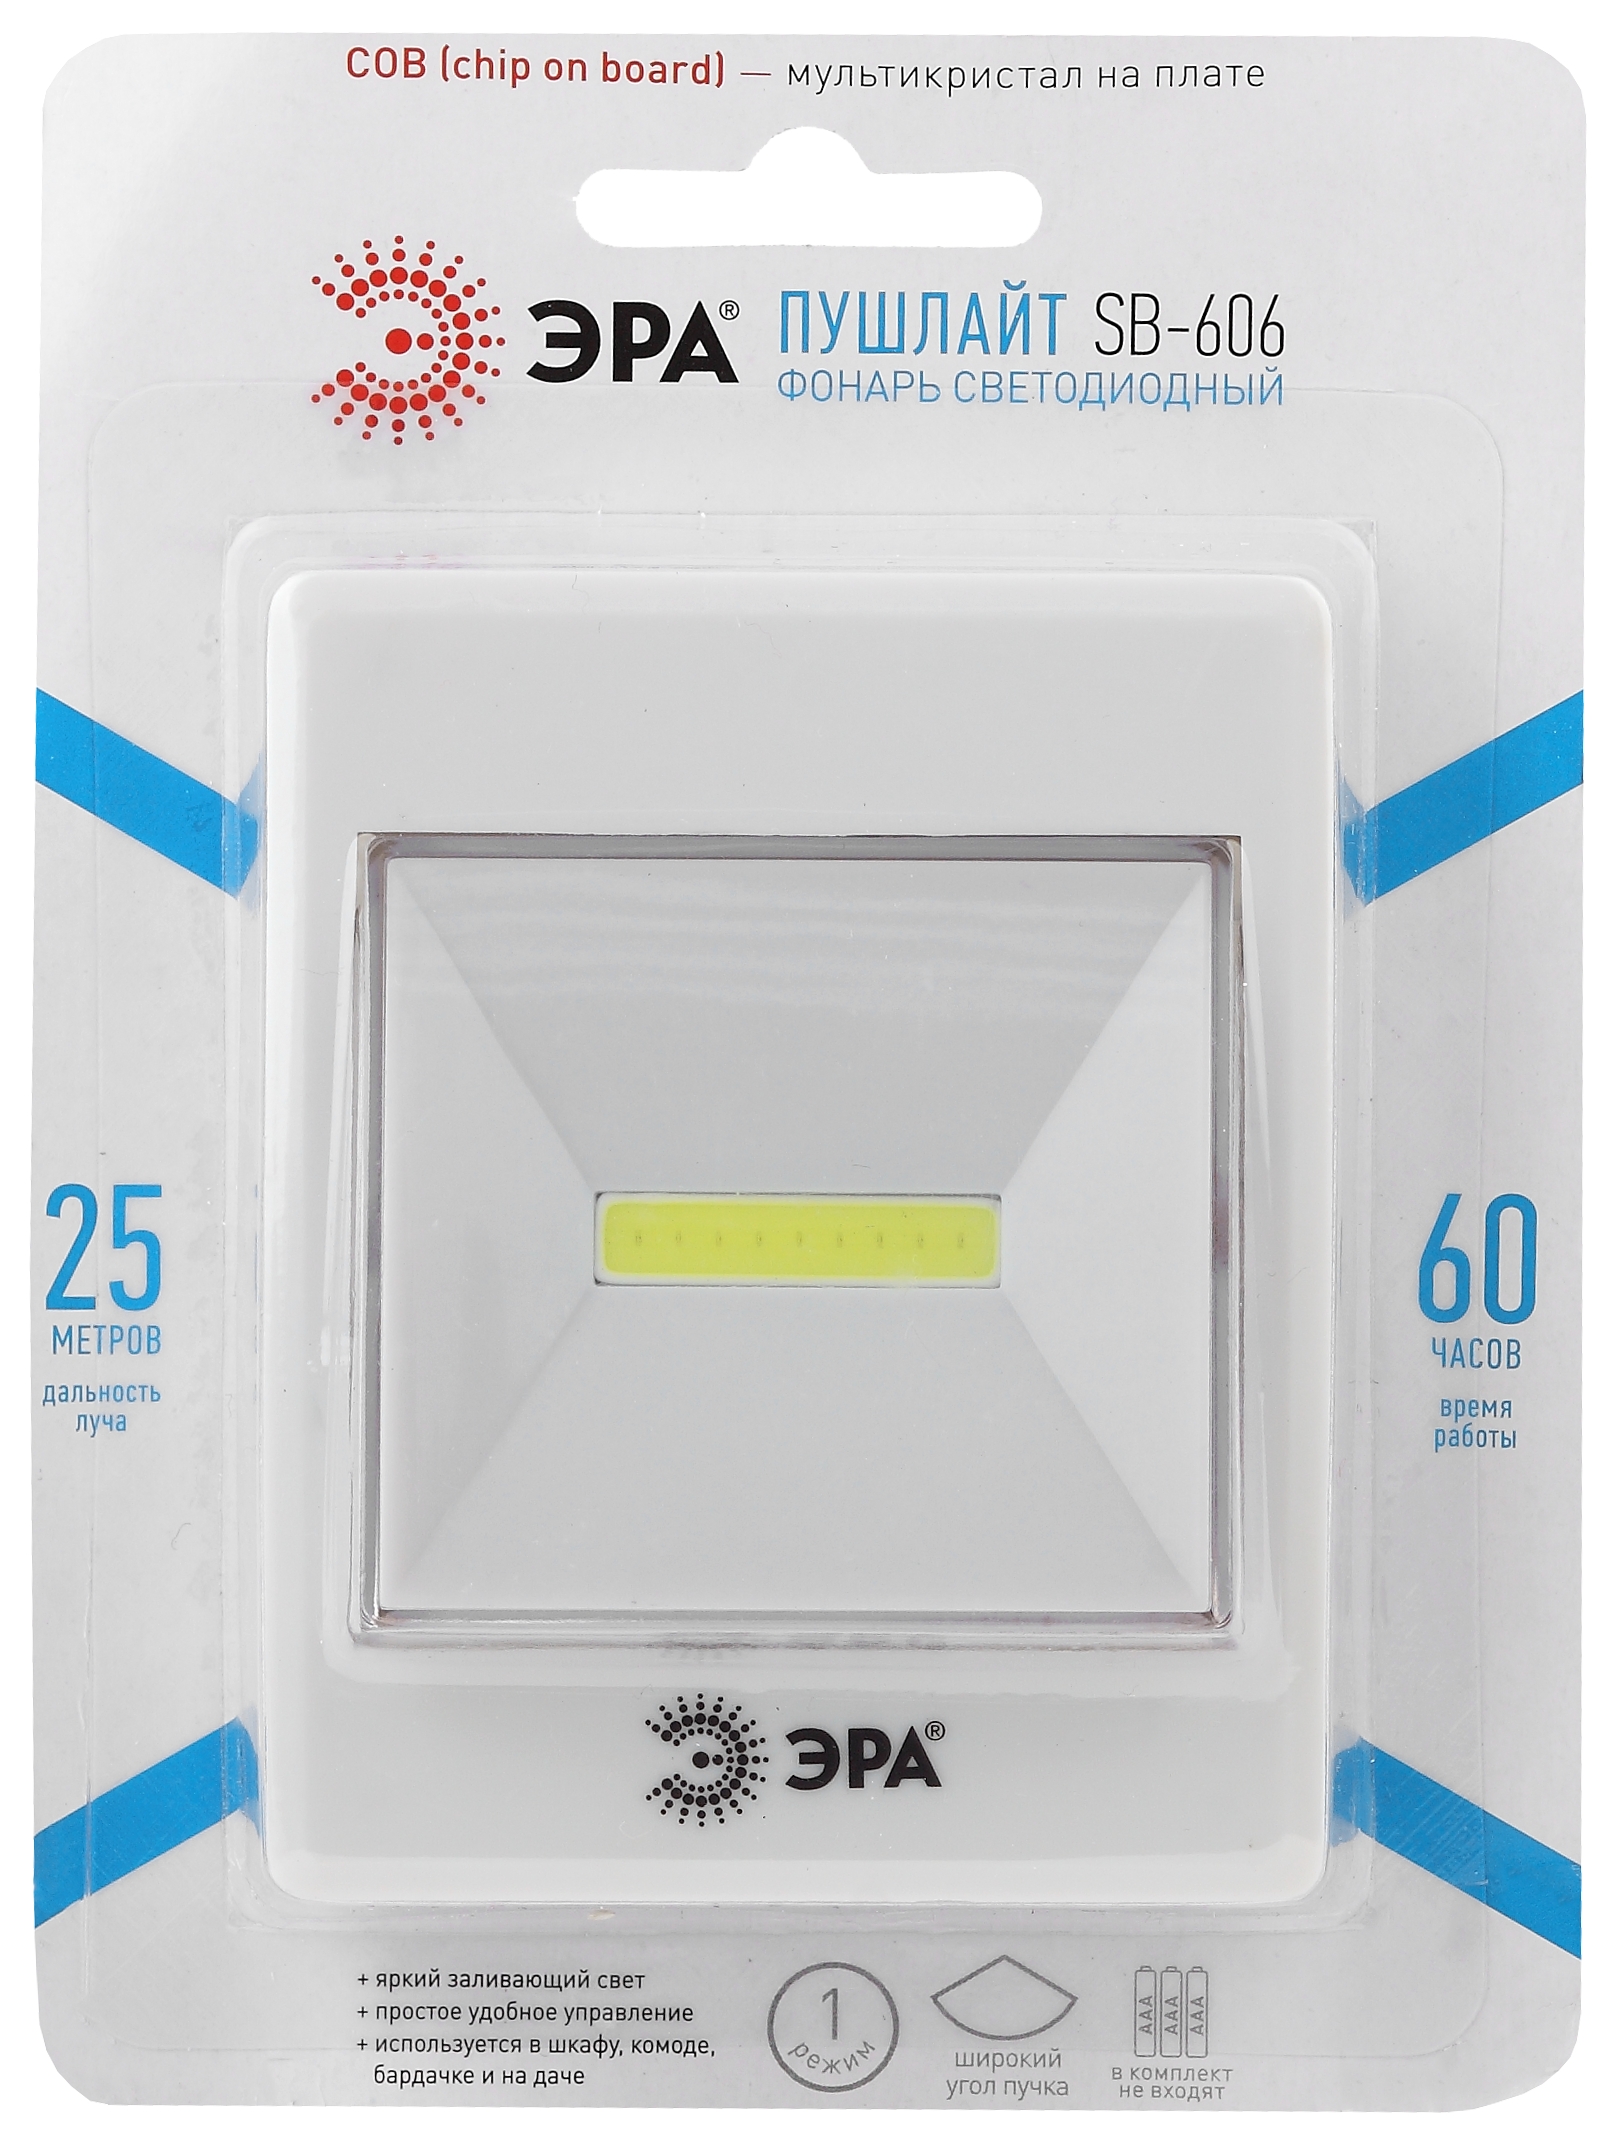 Фонарь-подсветка Эра SB-606 пушлайт-кликер (COB, 3xAAA, в комплект не входят, блистер) (Б0033747), цвет белый